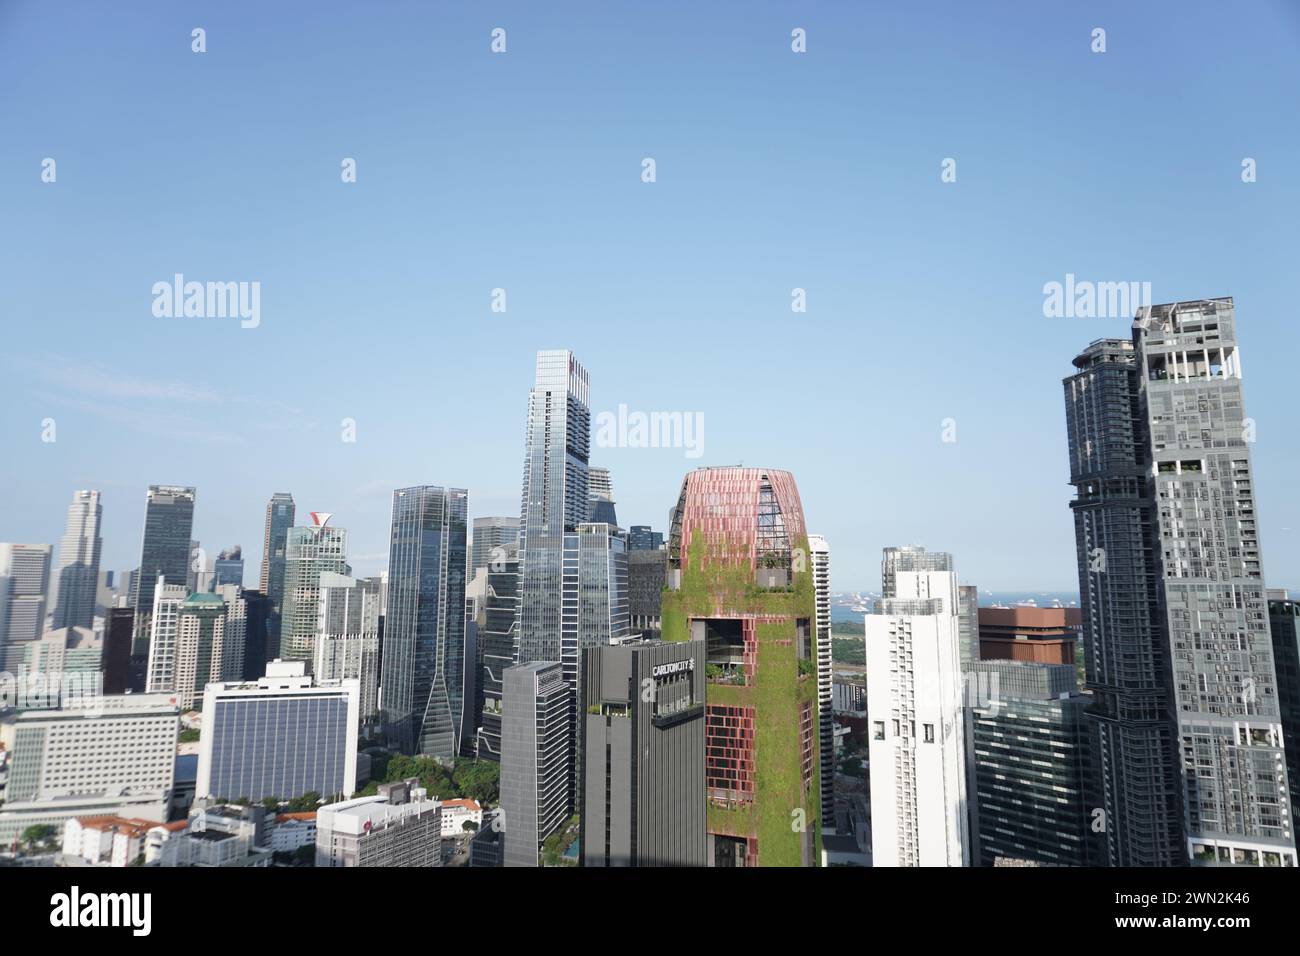 La scena dei grattacieli nel CBD di Singapore, un centro finanziario globale, presenta edifici prestigiosi come il Plus Building al 20 Cecil Street, 049705, Foto Stock